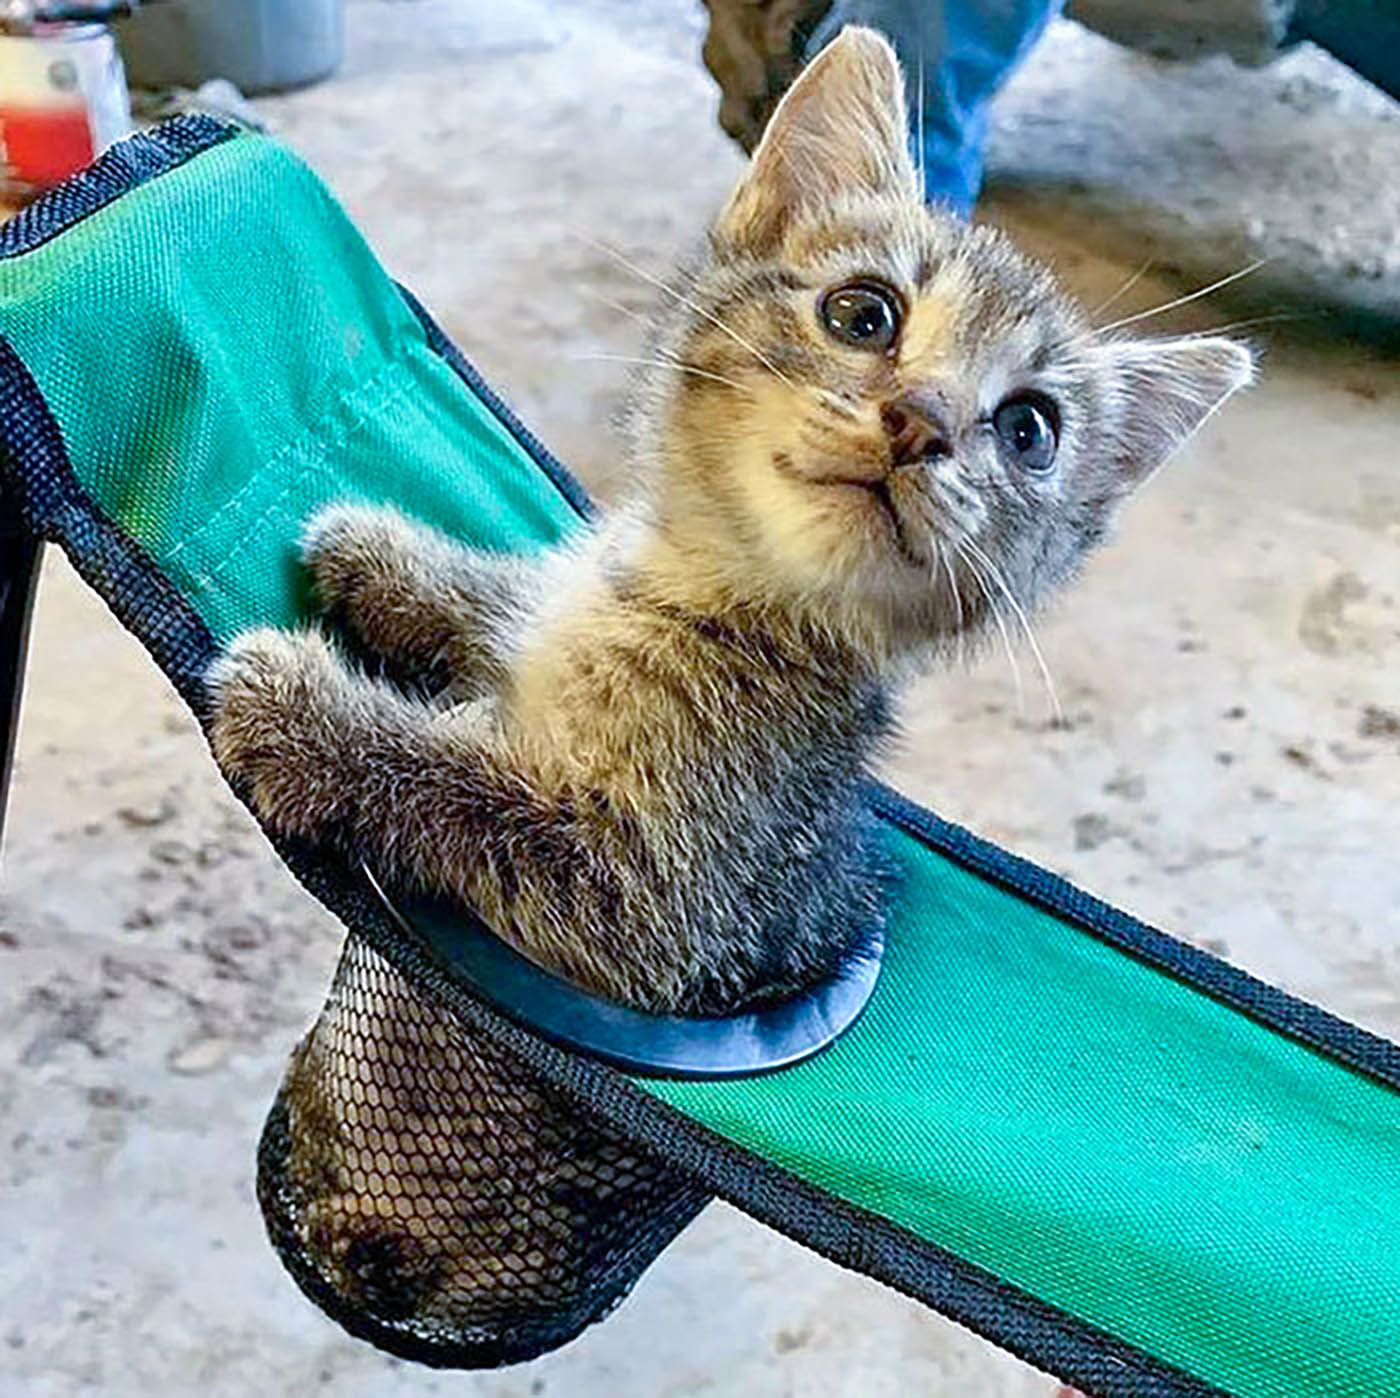 Ein entzückendes Kätzchen konnte diesem gemütlichen neuen Ruheplatz in einem Getränkehalter im Picknickstuhl nicht widerstehen